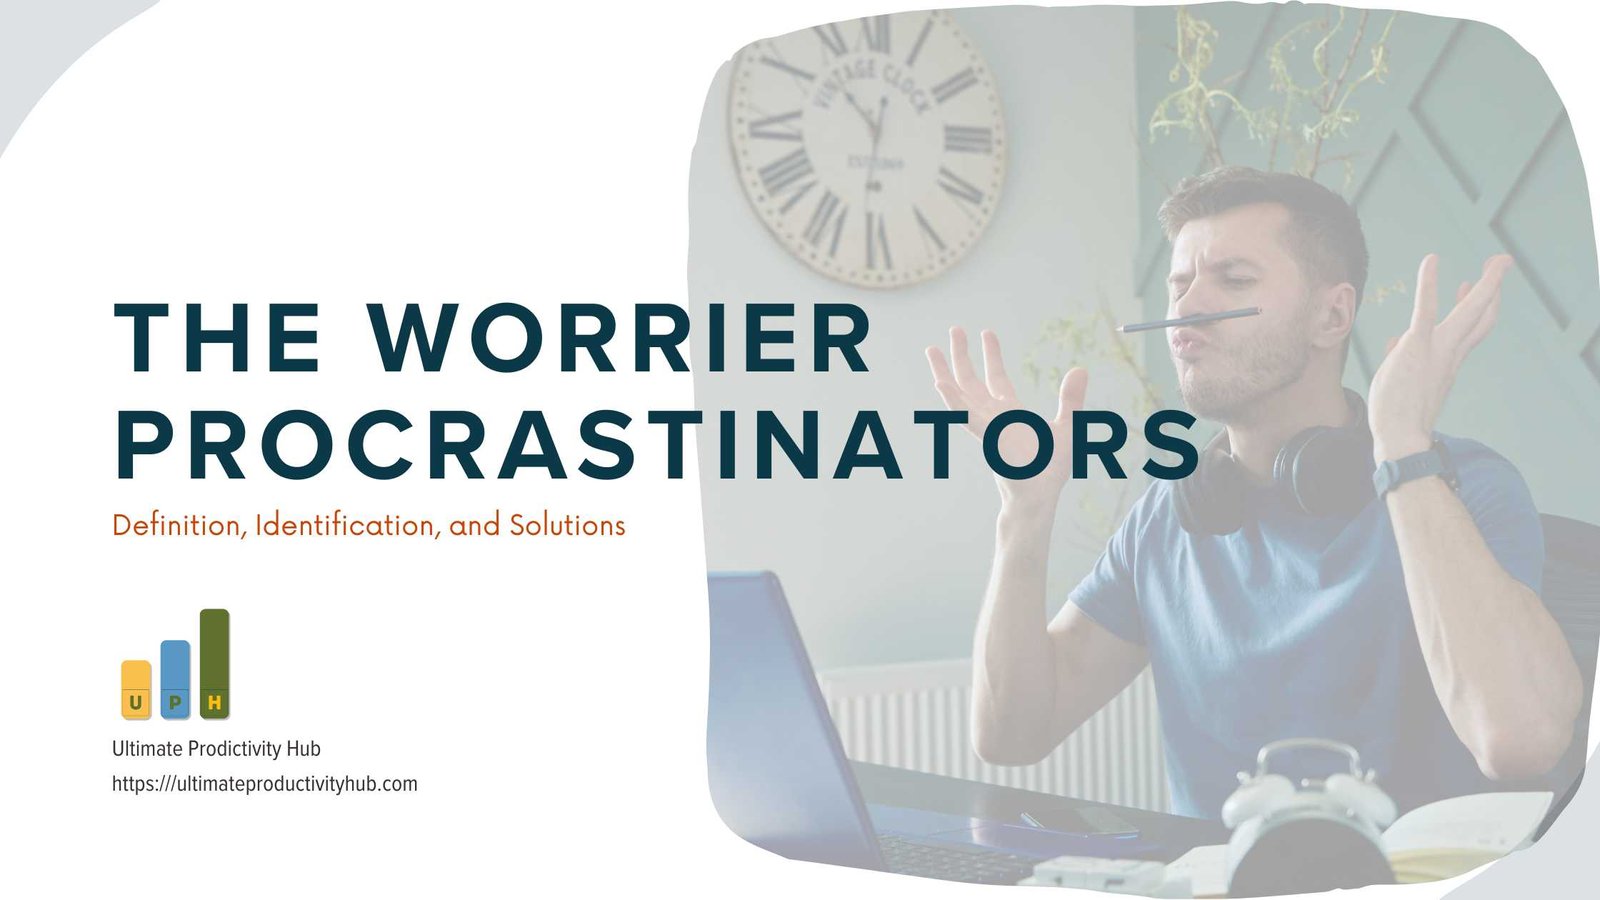 The Worrier Procrastinators